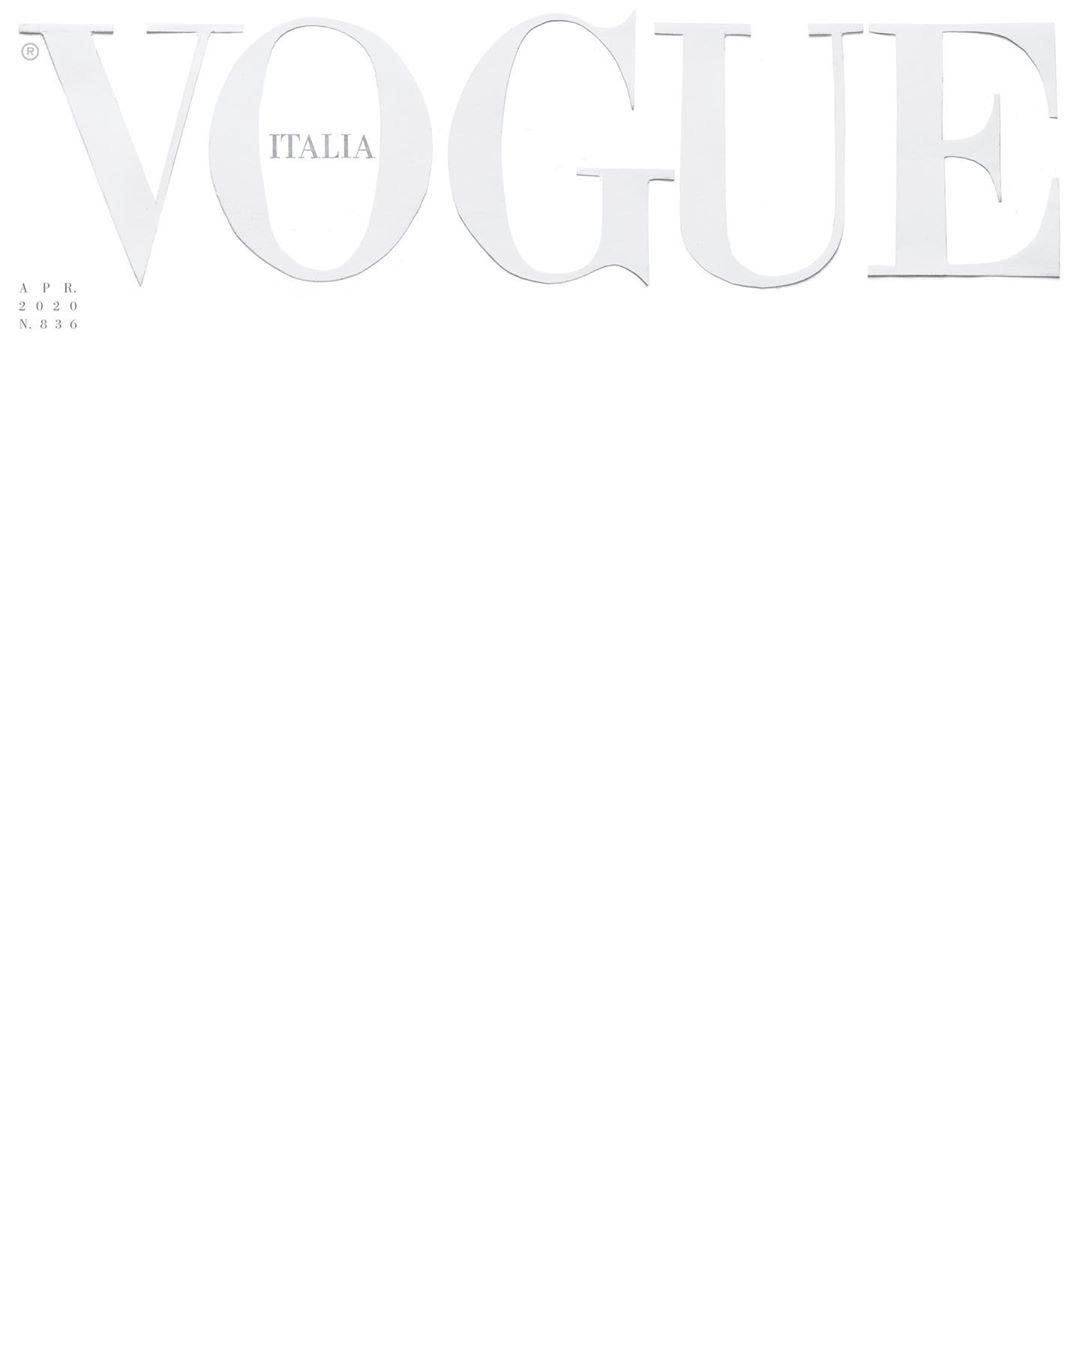 Sốc: Tạp chí Vogue Ý để trang bìa trắng tinh - trống trơn, chuyện gì đang xảy ra? - Ảnh 1.